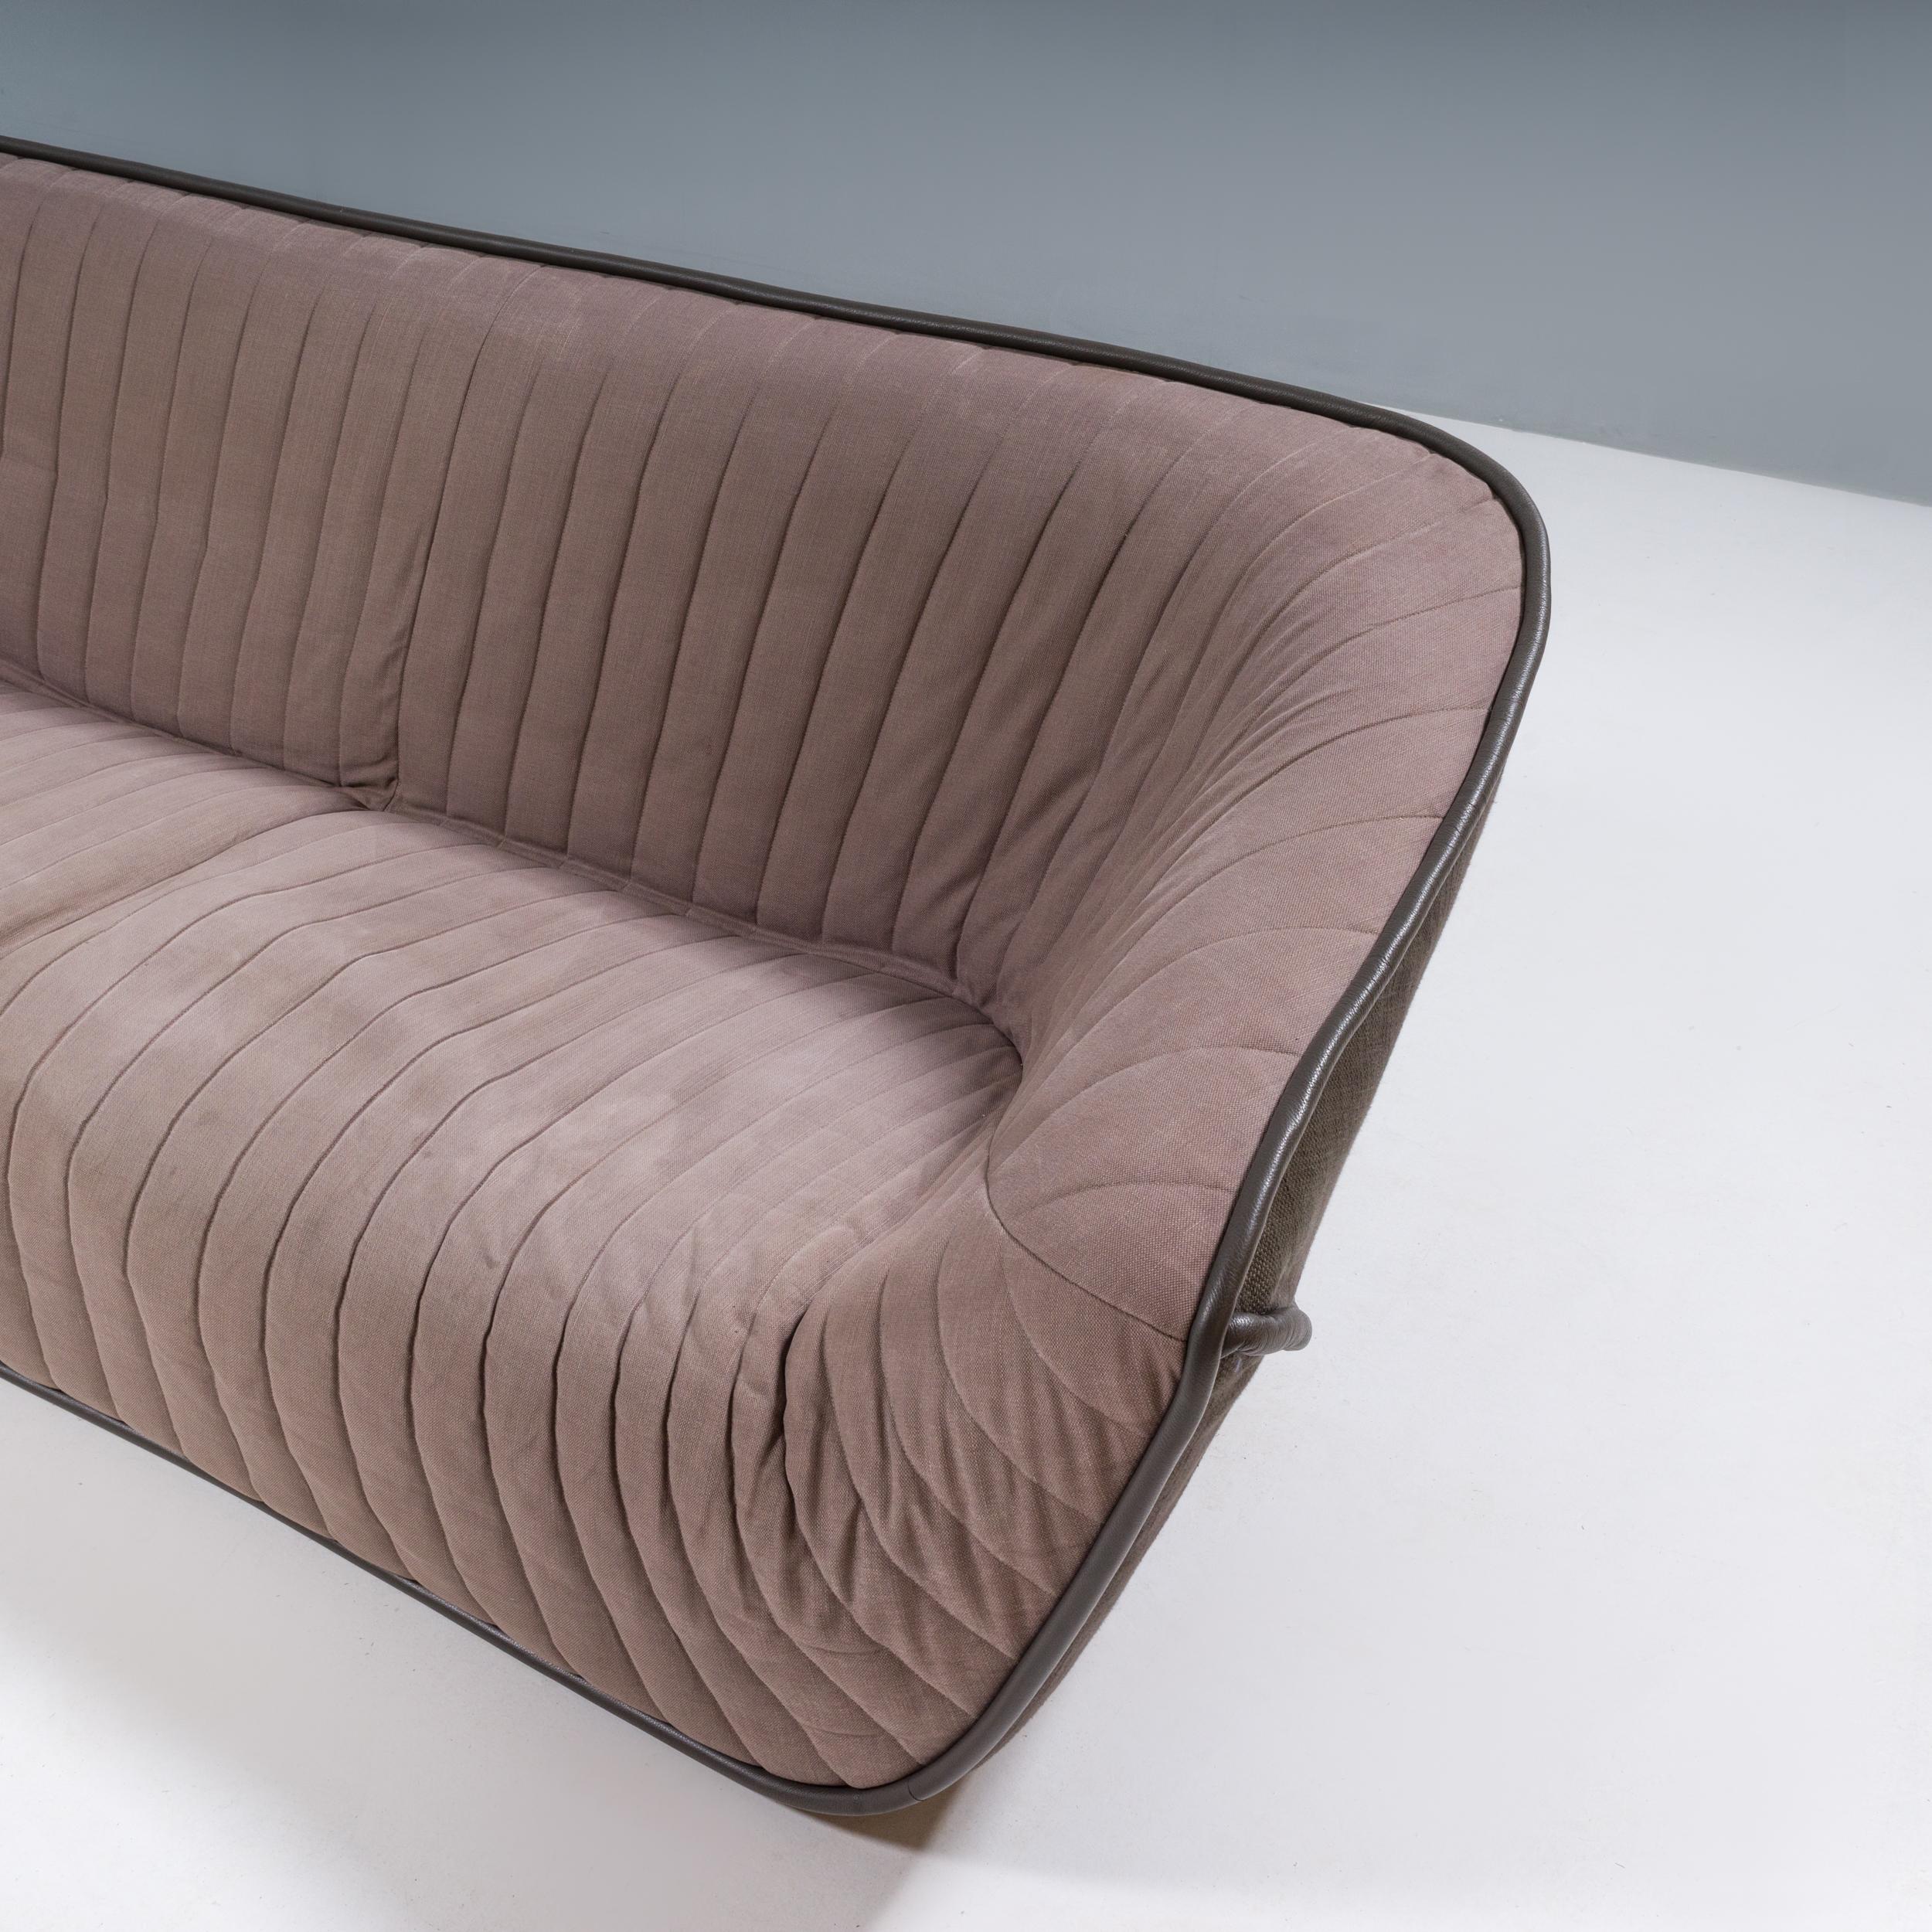 Initialement conçu par Cédric Ragot pour Roche Bobois en 2013, le canapé Nautil donne une mise à jour contemporaine aux styles iconiques des années 1970.

Construit à partir d'un cadre en bois massif, le canapé est doté d'un padding en mousse